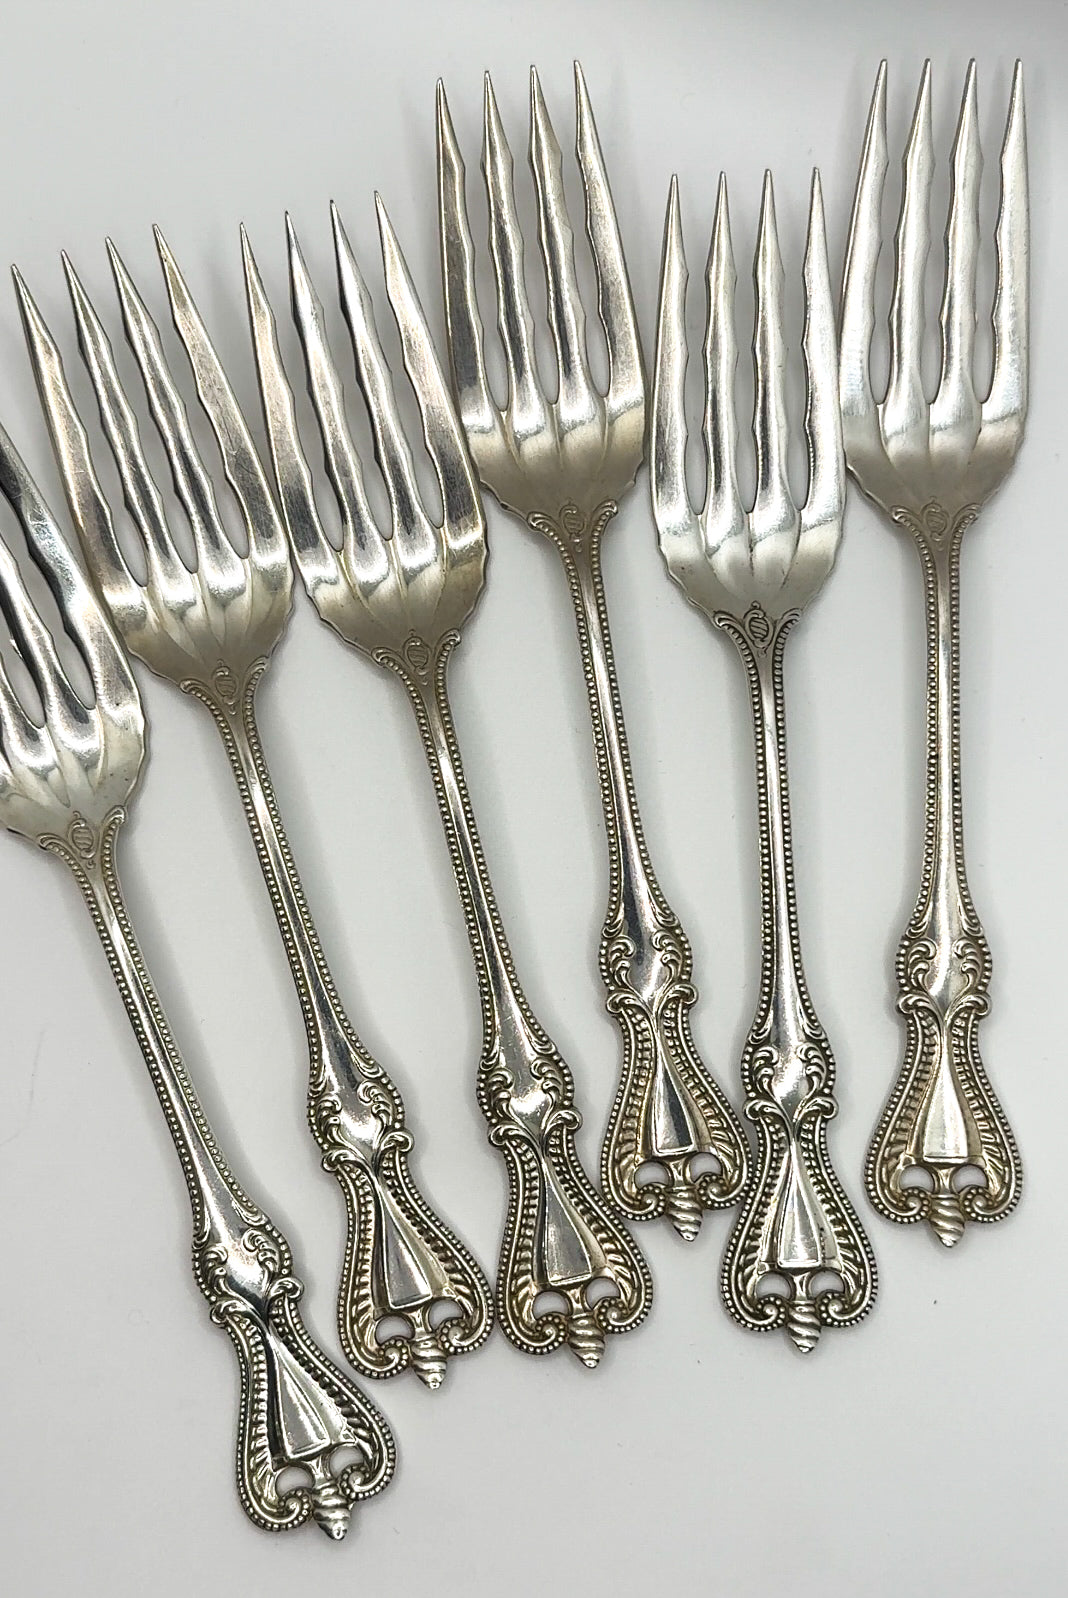 Silver desert forks